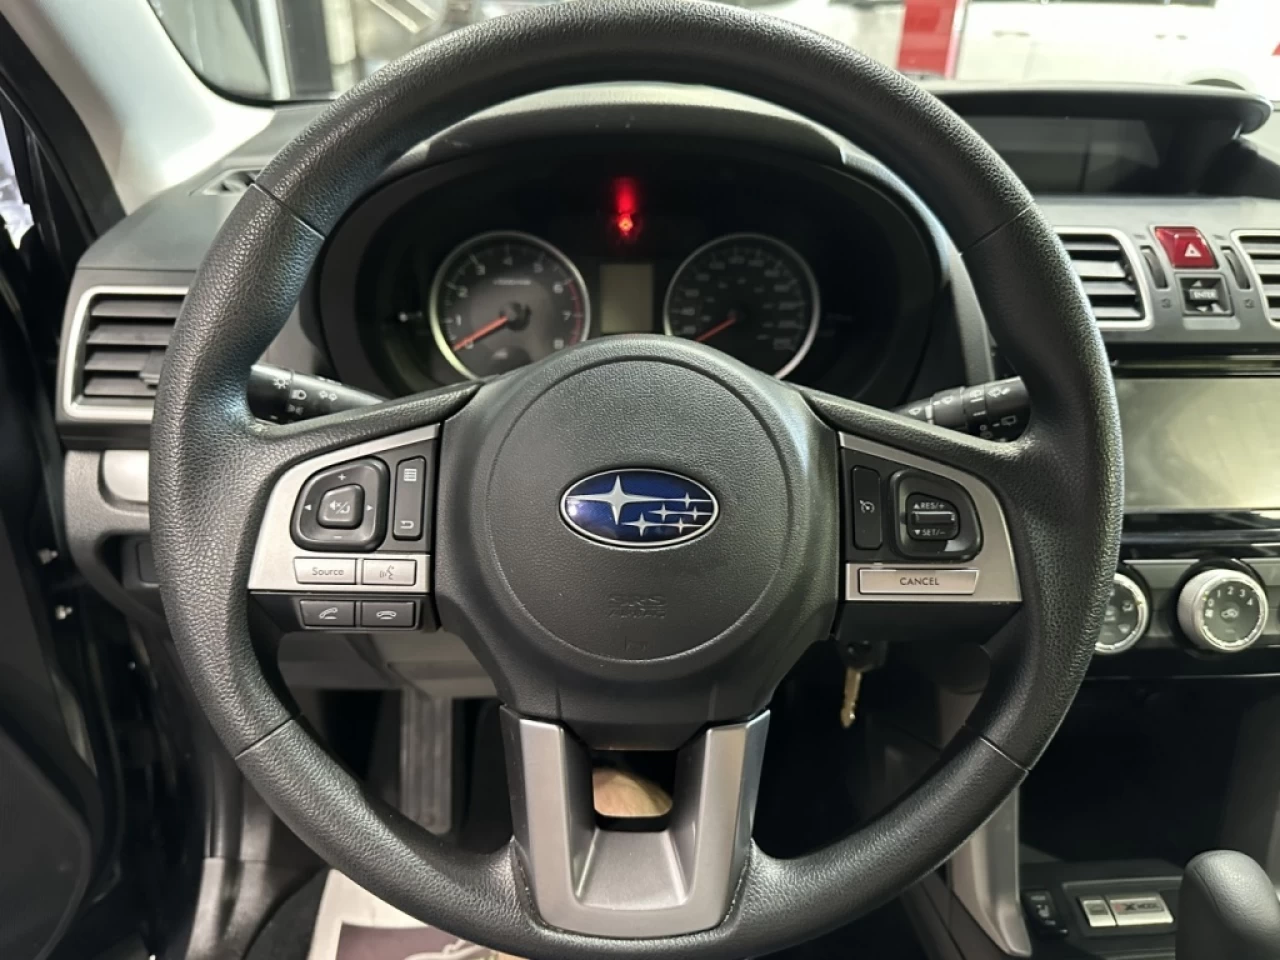 2018 Subaru Forester CONVENIENCE AWD CAMERA A/C AVEC 157KM Main Image